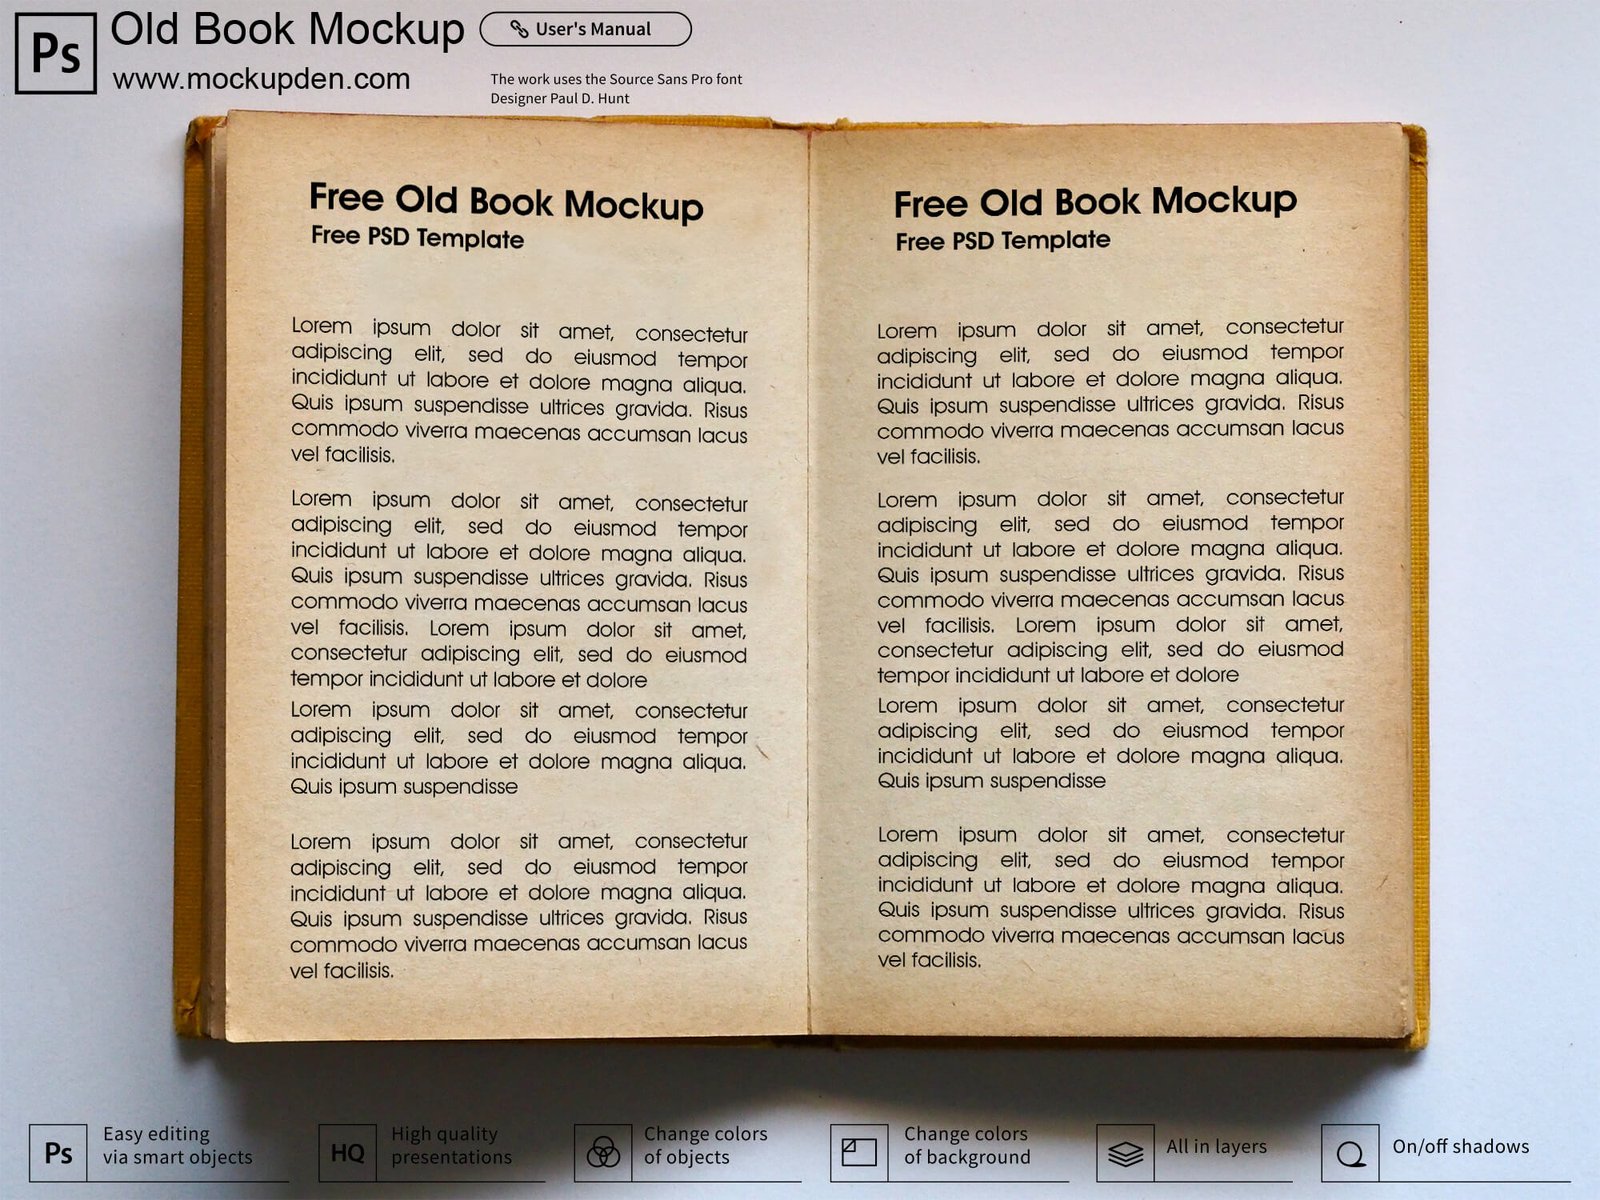 Download Free Old Book Mockup PSD Template - Mockup Den